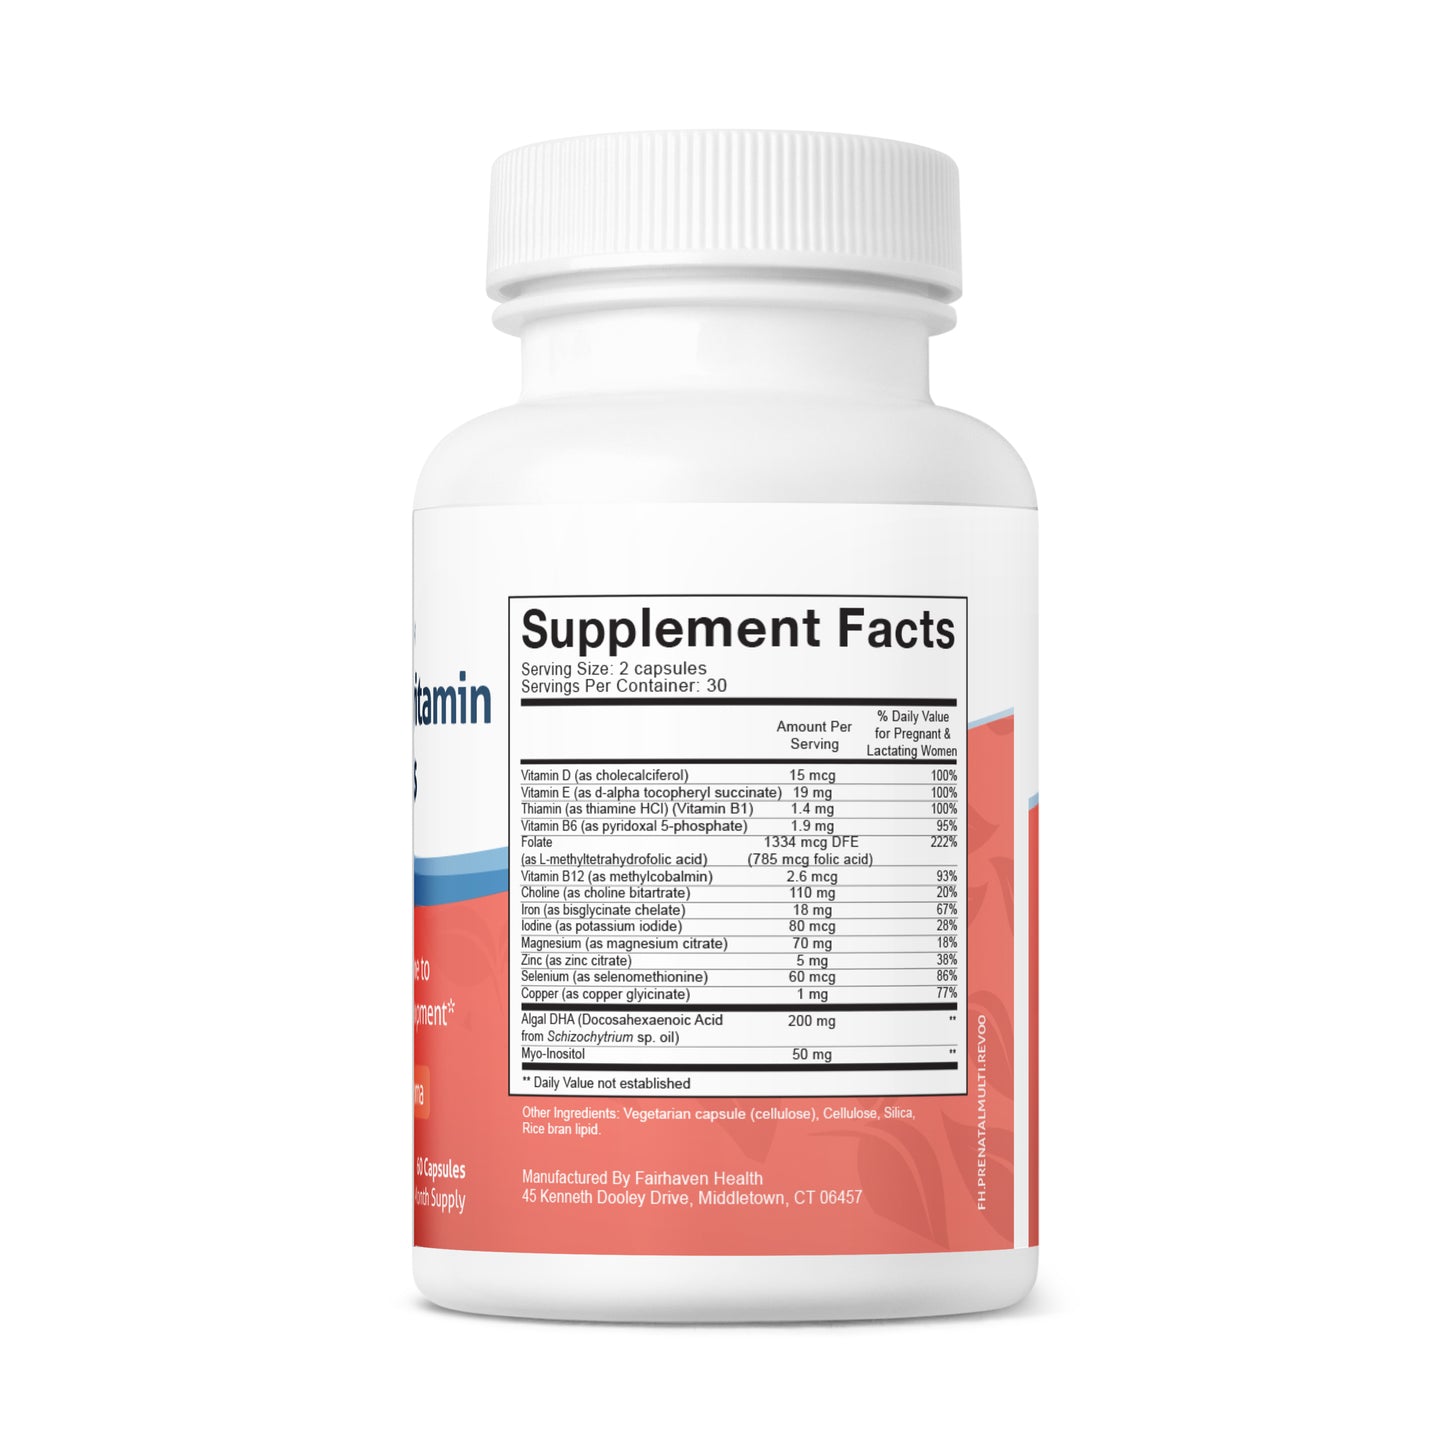 Fairhaven Health Prenatal Multivitamin Essentials Supplement Facts panel on bottle.